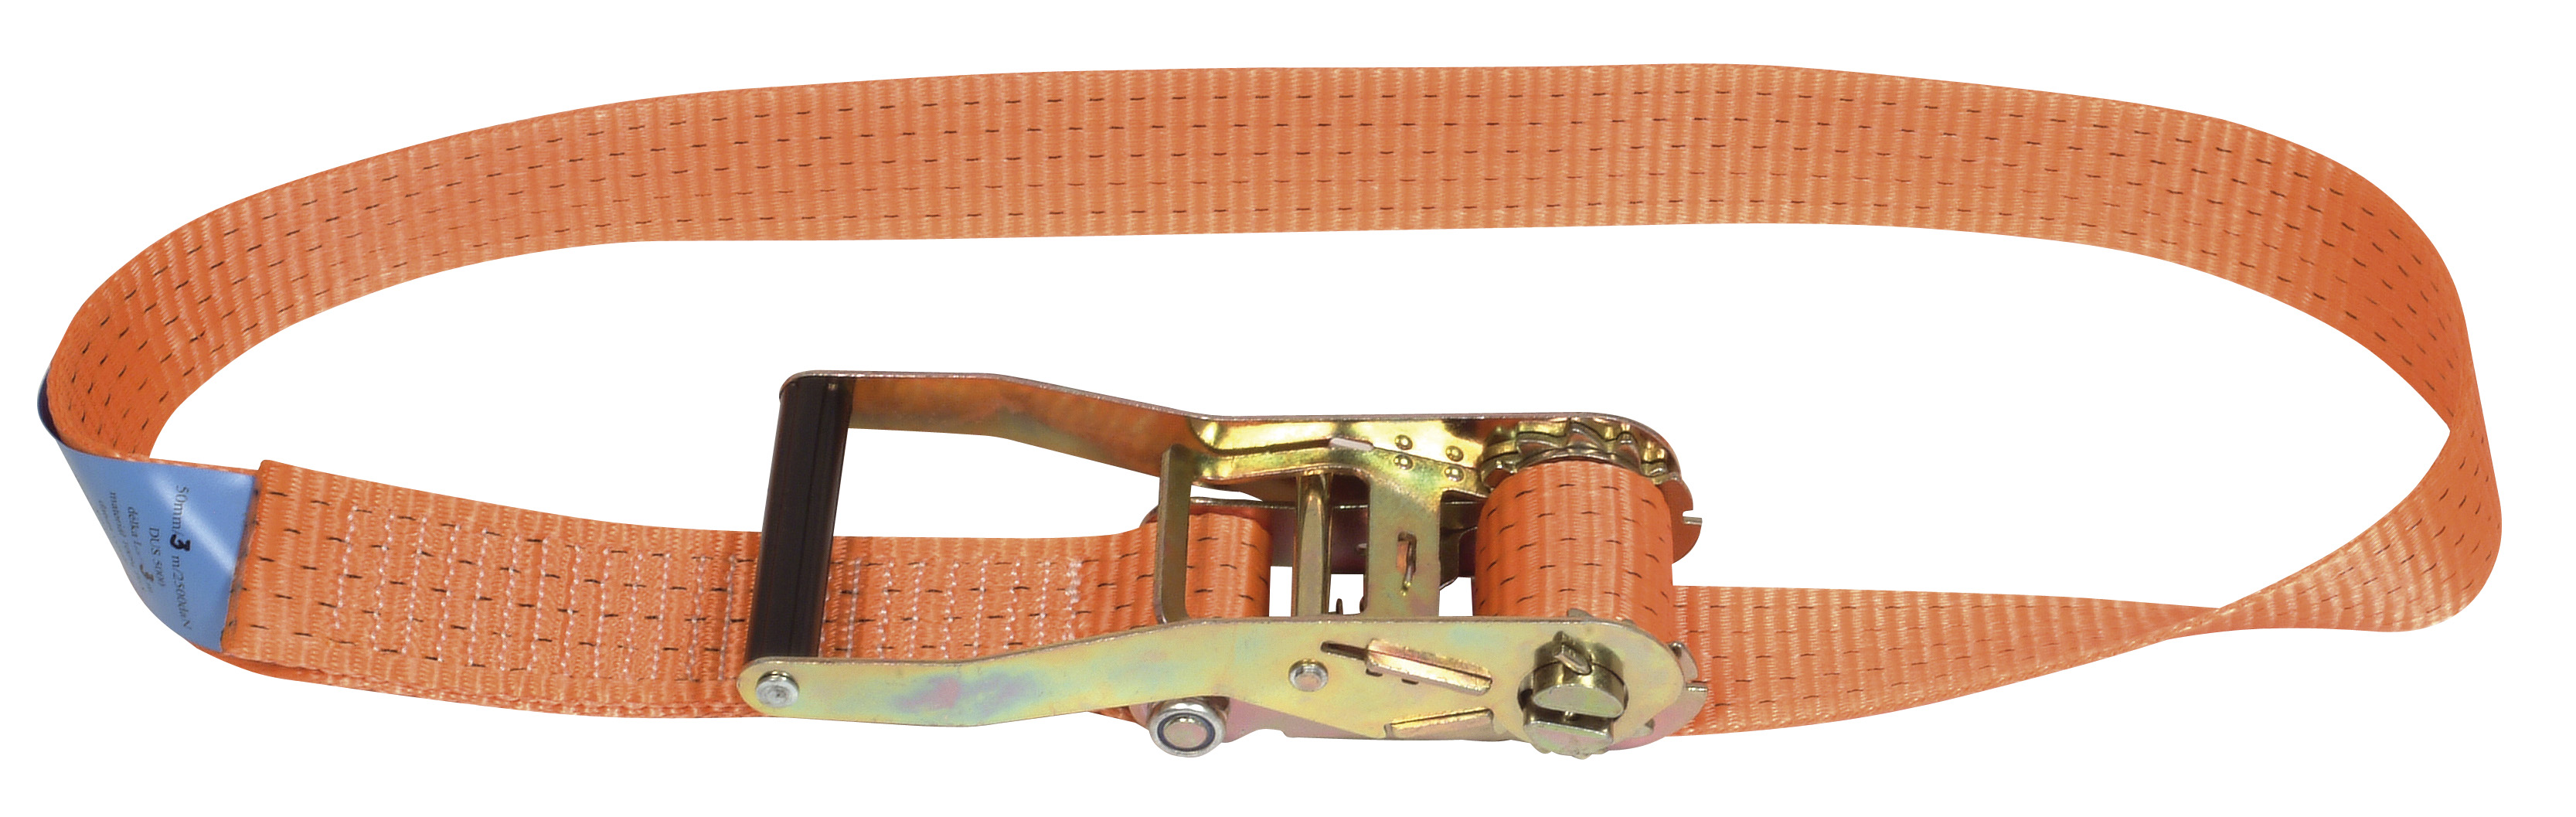 Single-piece belt